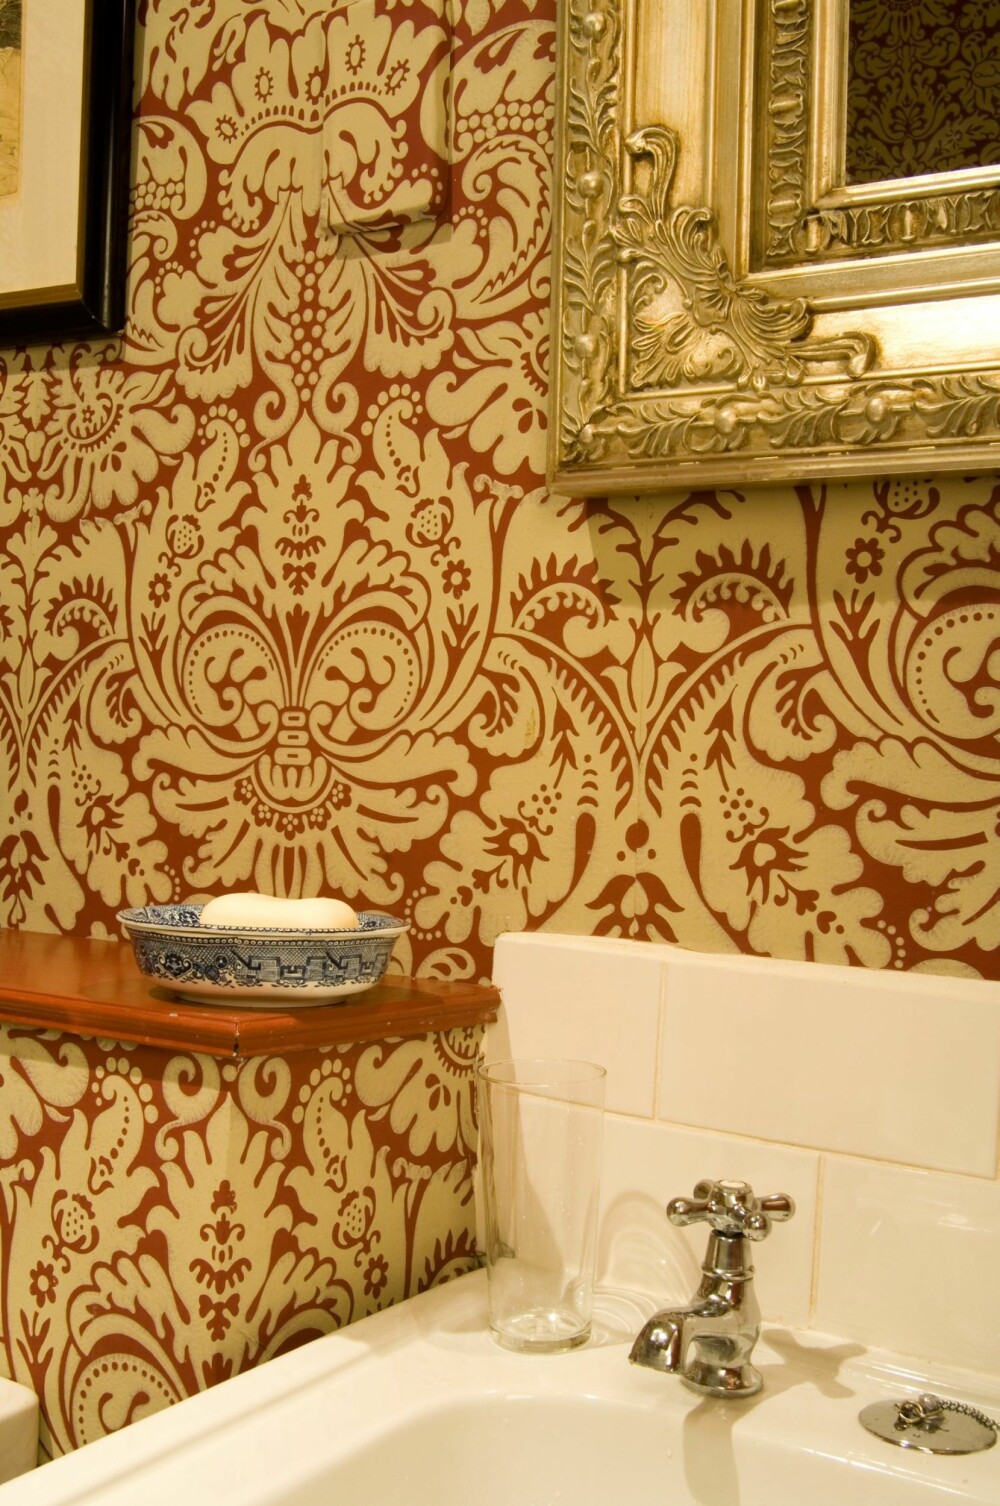 Bad med mønstret tapet på veggene i ekte Downton Abbey stil. Tapetet kommer fra britiske Farrow & Ball. Speil med tung, forgylt ramme kompletterer stilen.